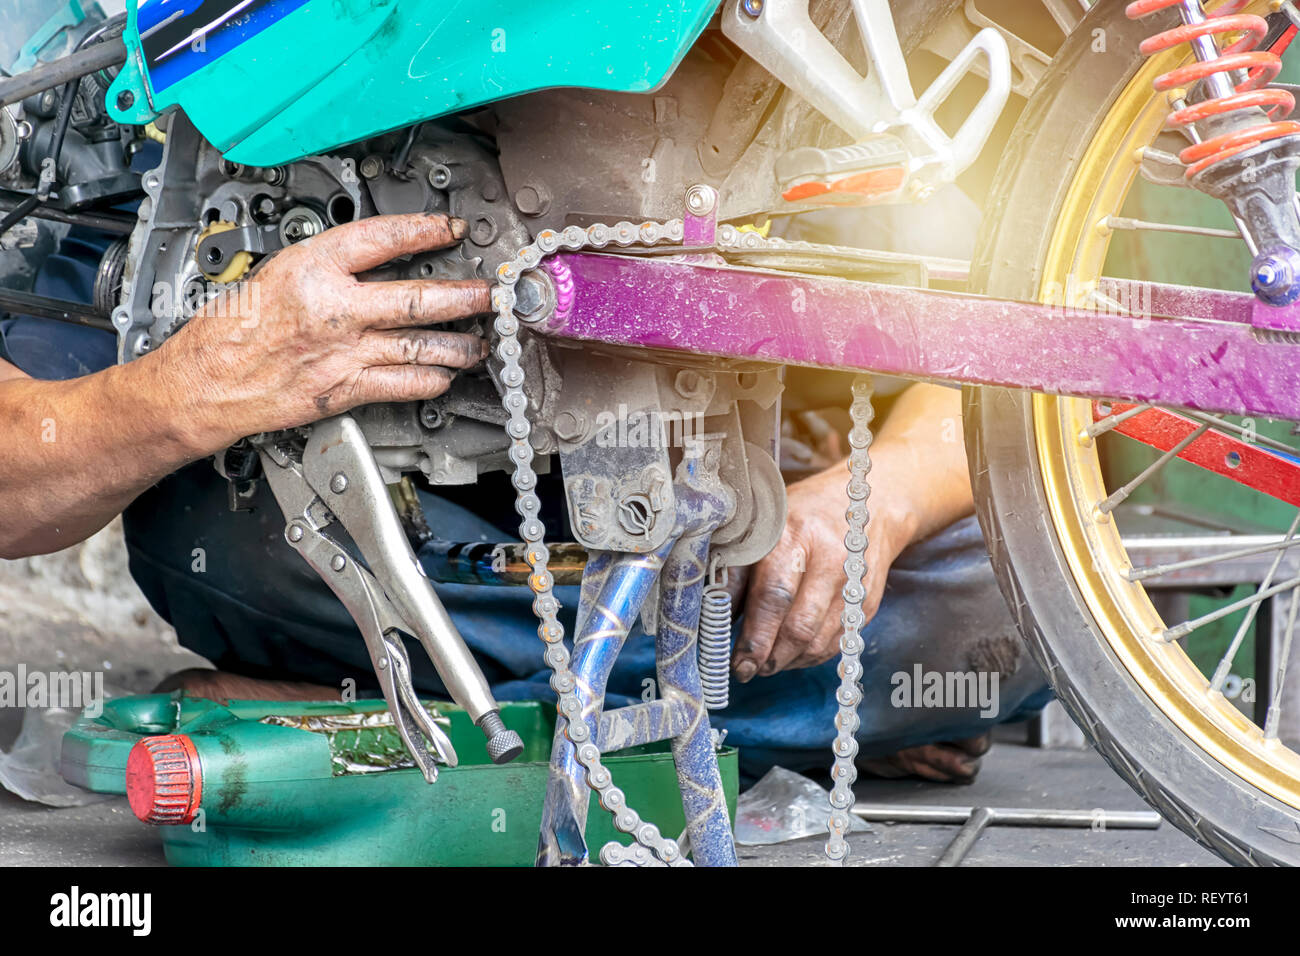 Motorrad Motor Reparatur Arbeiter sind hart zu arbeiten. Komplizierte Probleme lösen, Maschinenbau. Die Hand, die das Öl riecht. Stockfoto